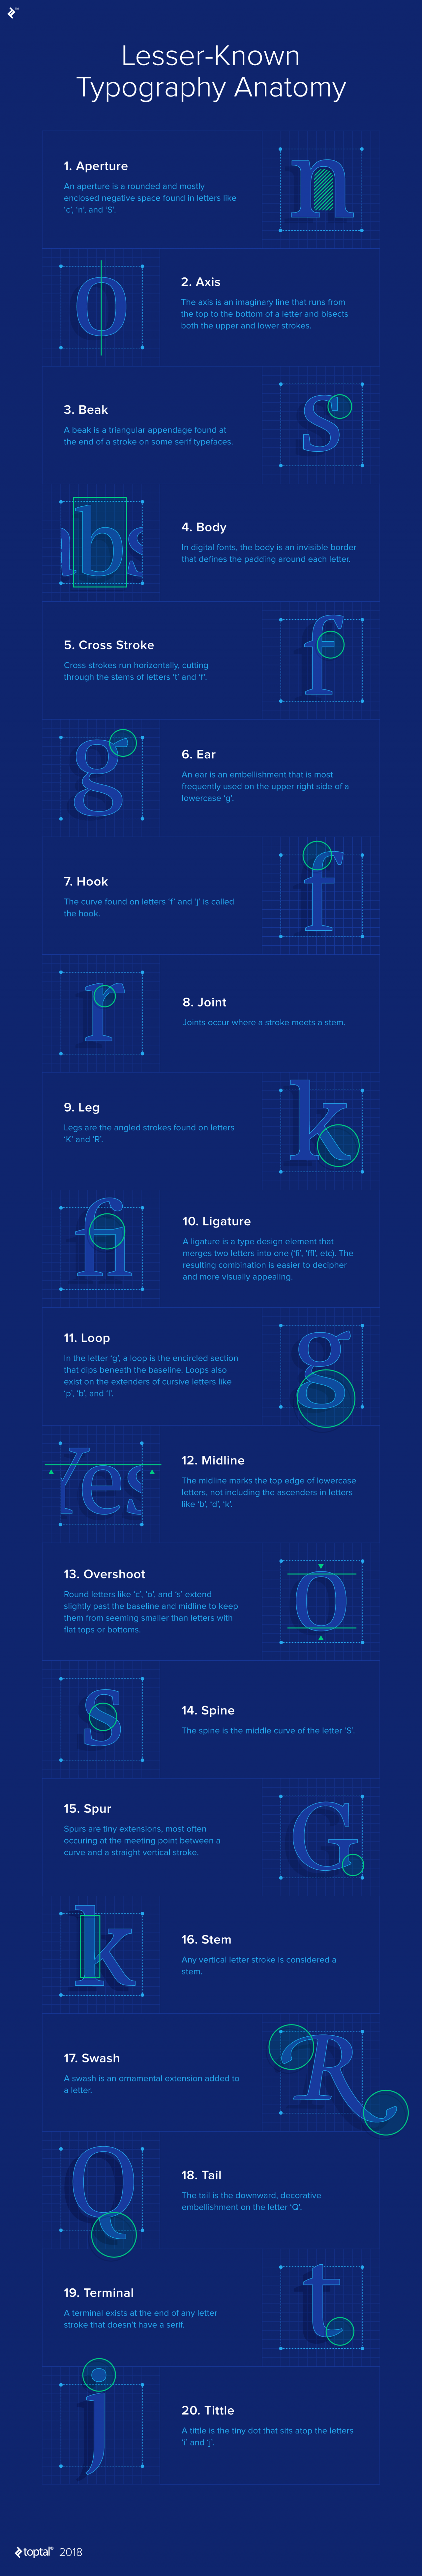 [Infographic] 20 thuật ngữ Typography mà có thể bạn chưa biết